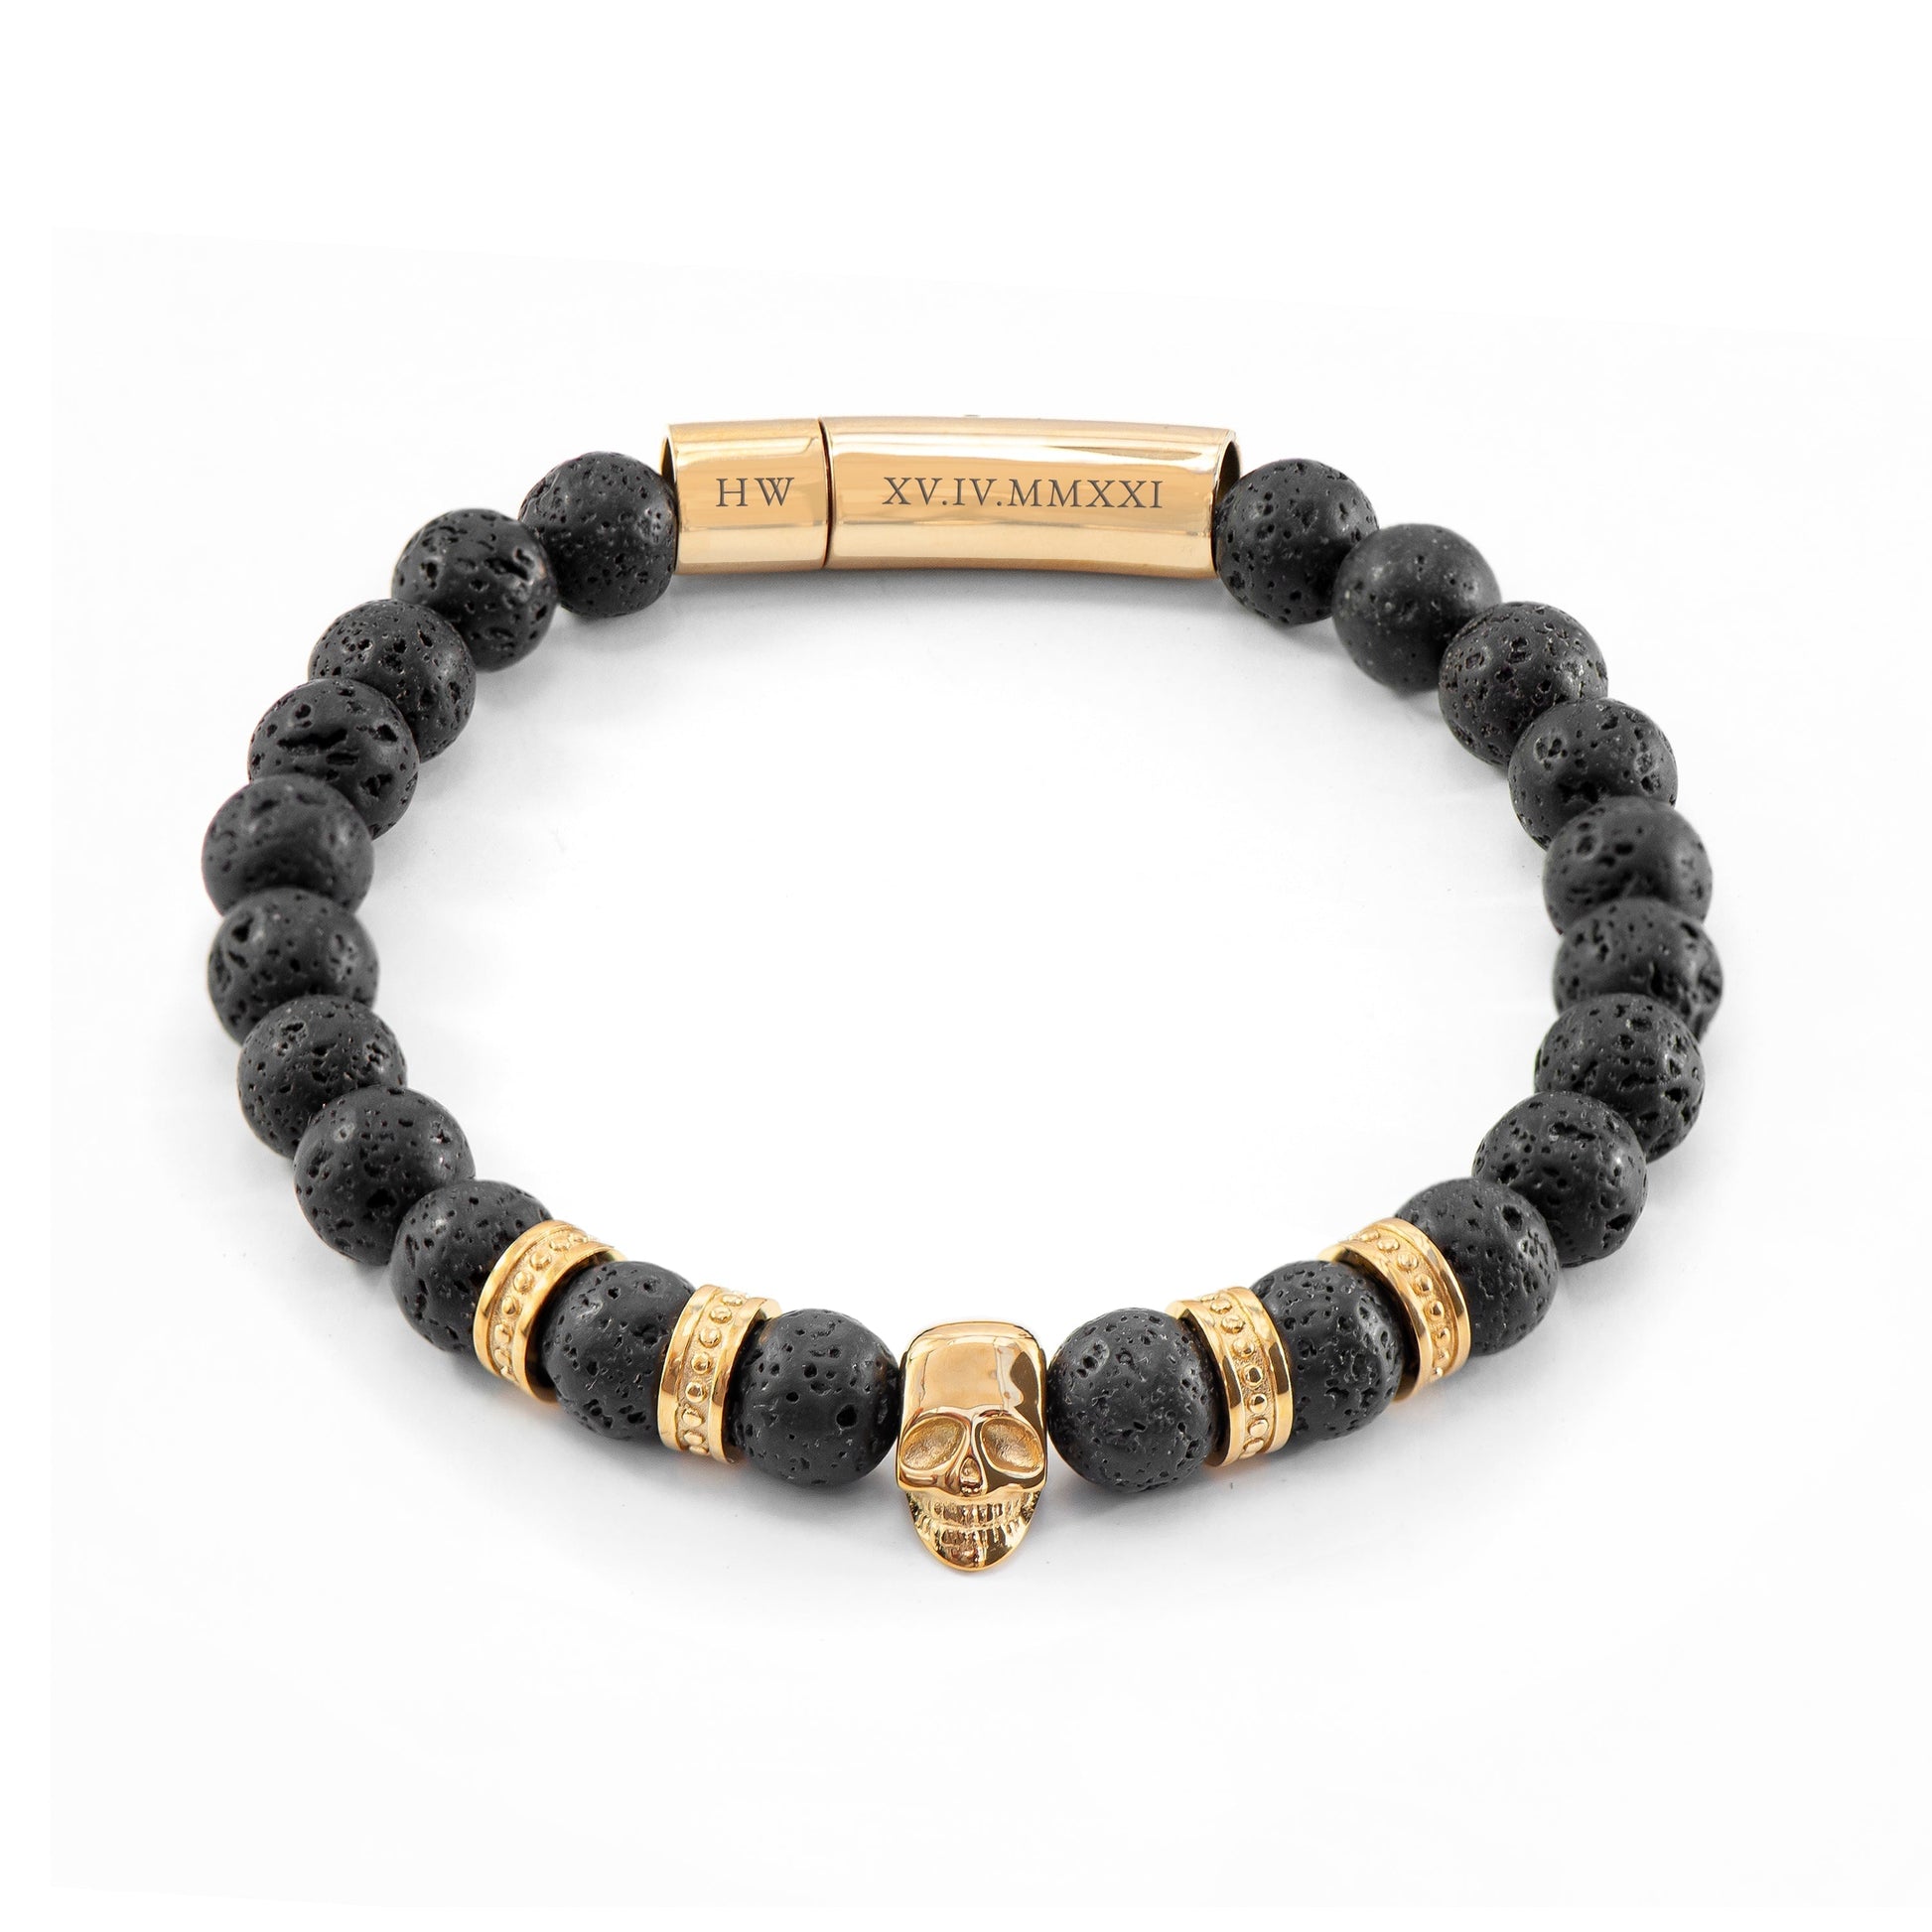 Personalized Men's Bracelets - Personalized Men's Golden Skull Beaded Bracelet 